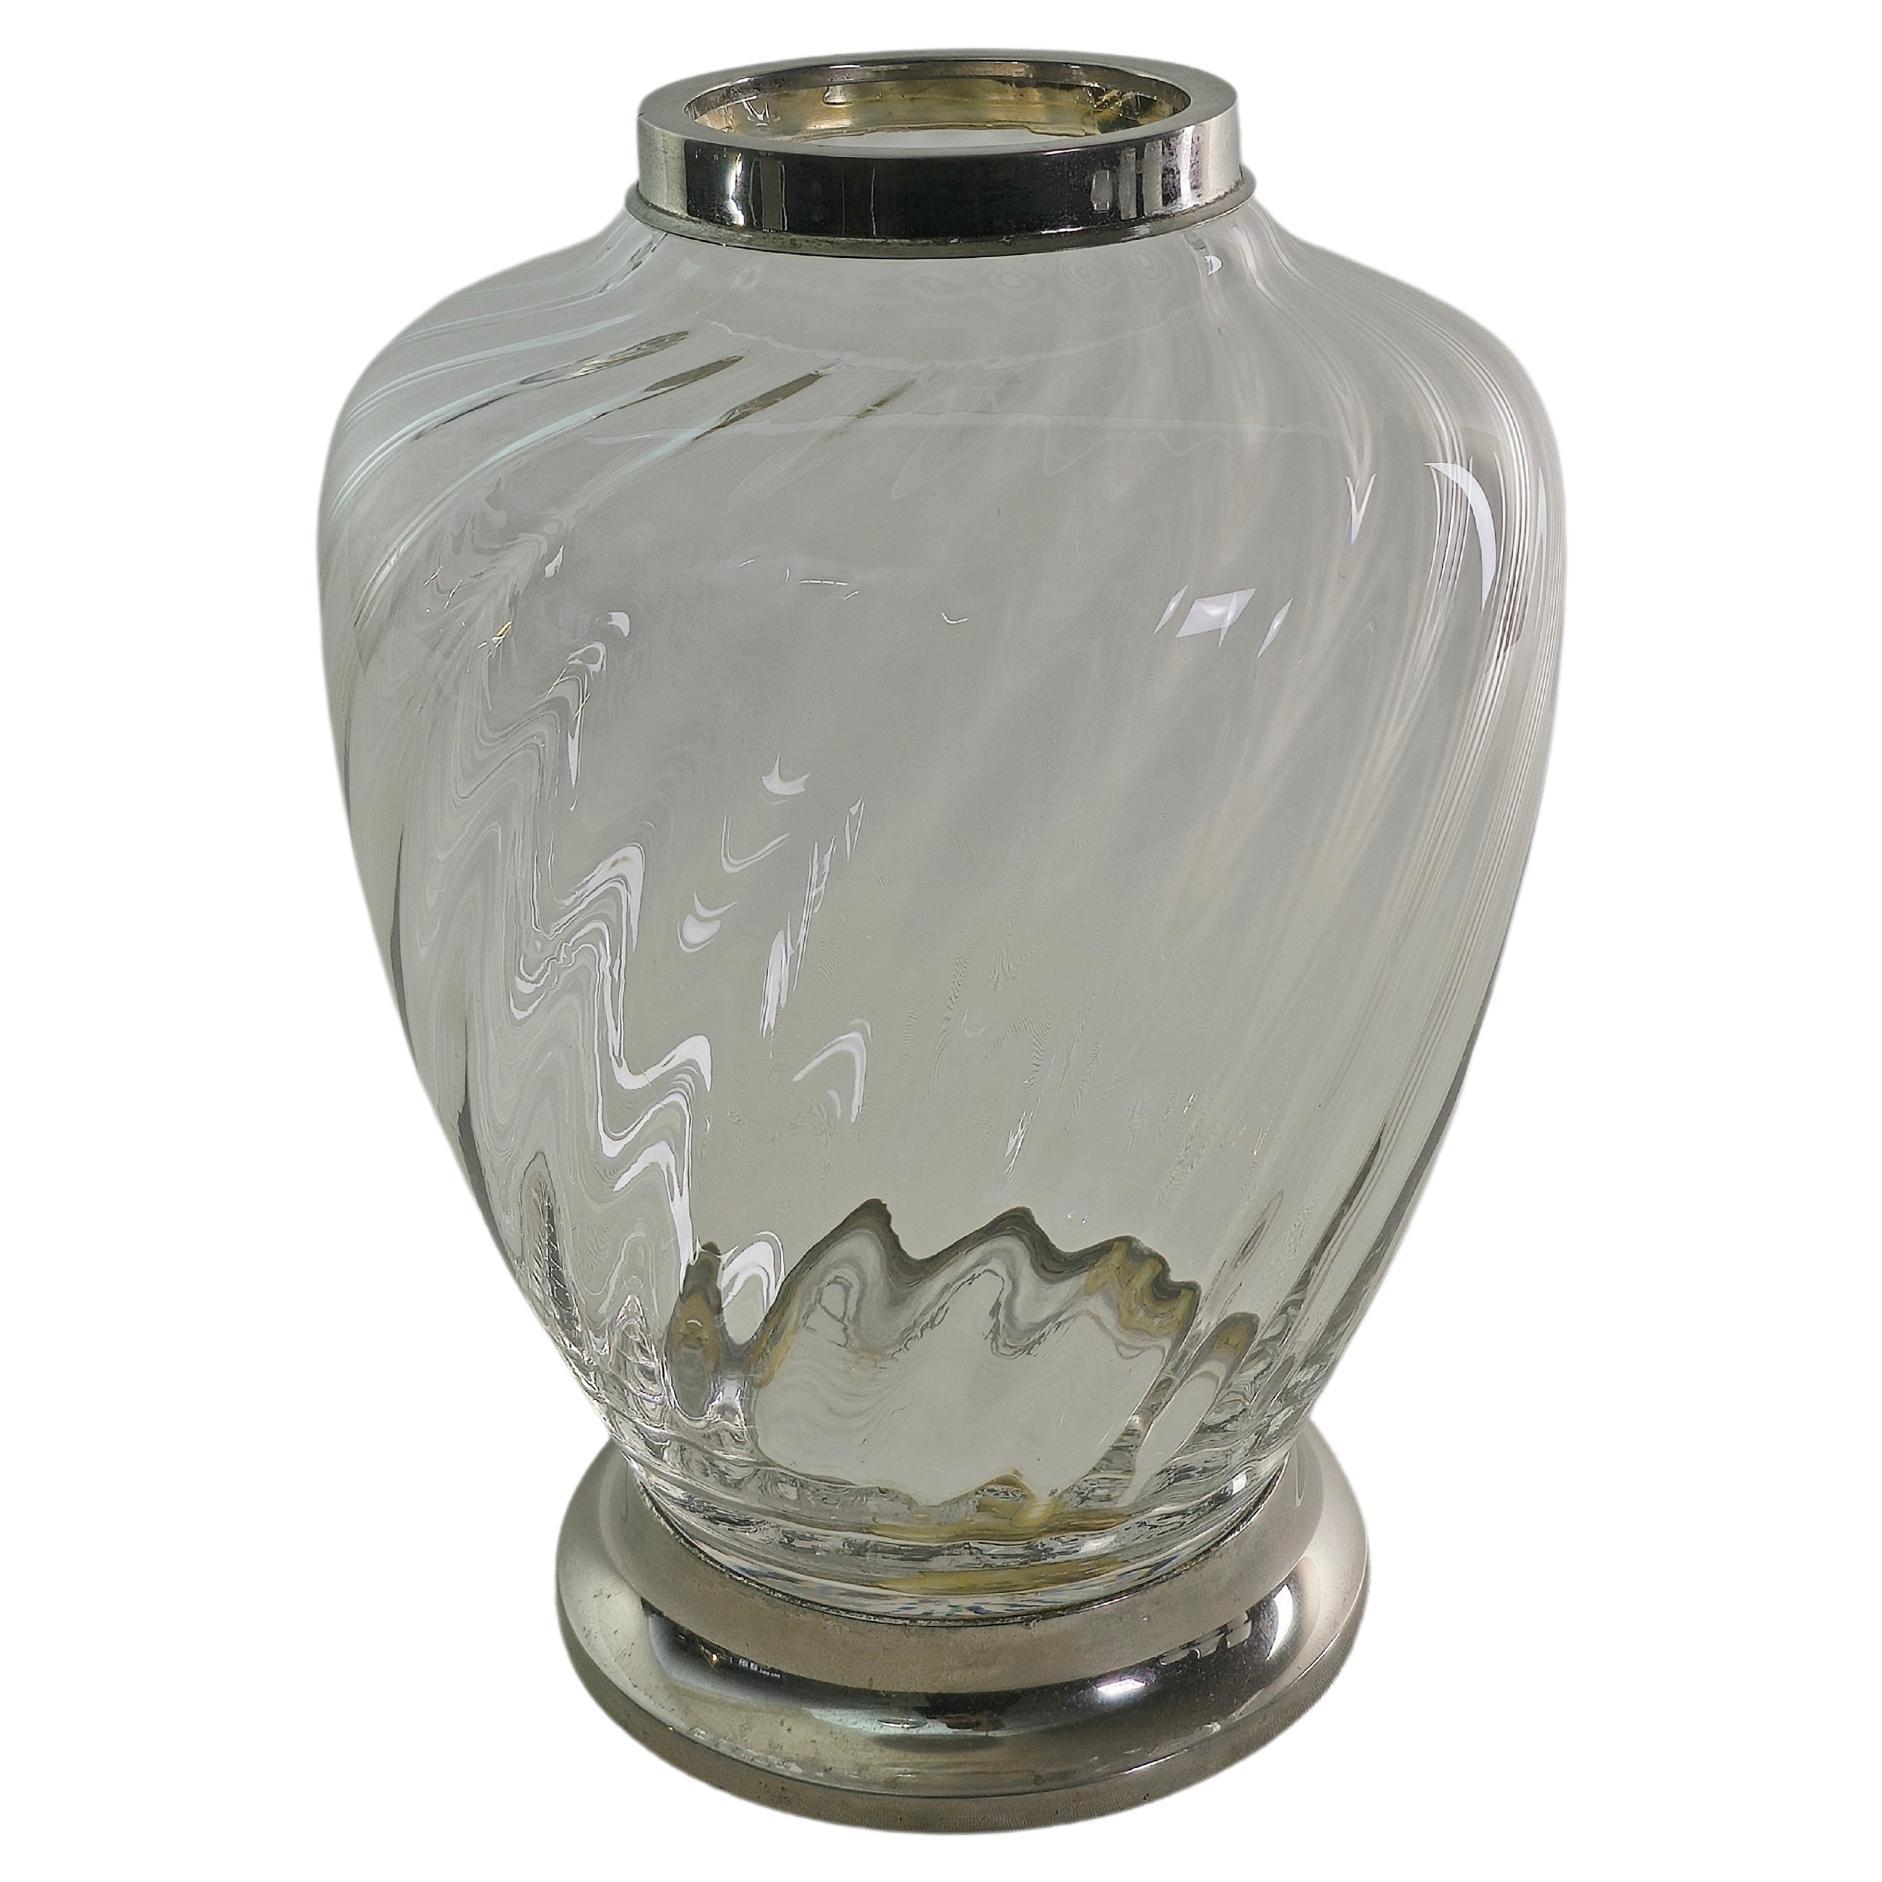 Vase Dekoratives Objekt Murano Glas Vergoldet Midcentury Italian Design 1950s